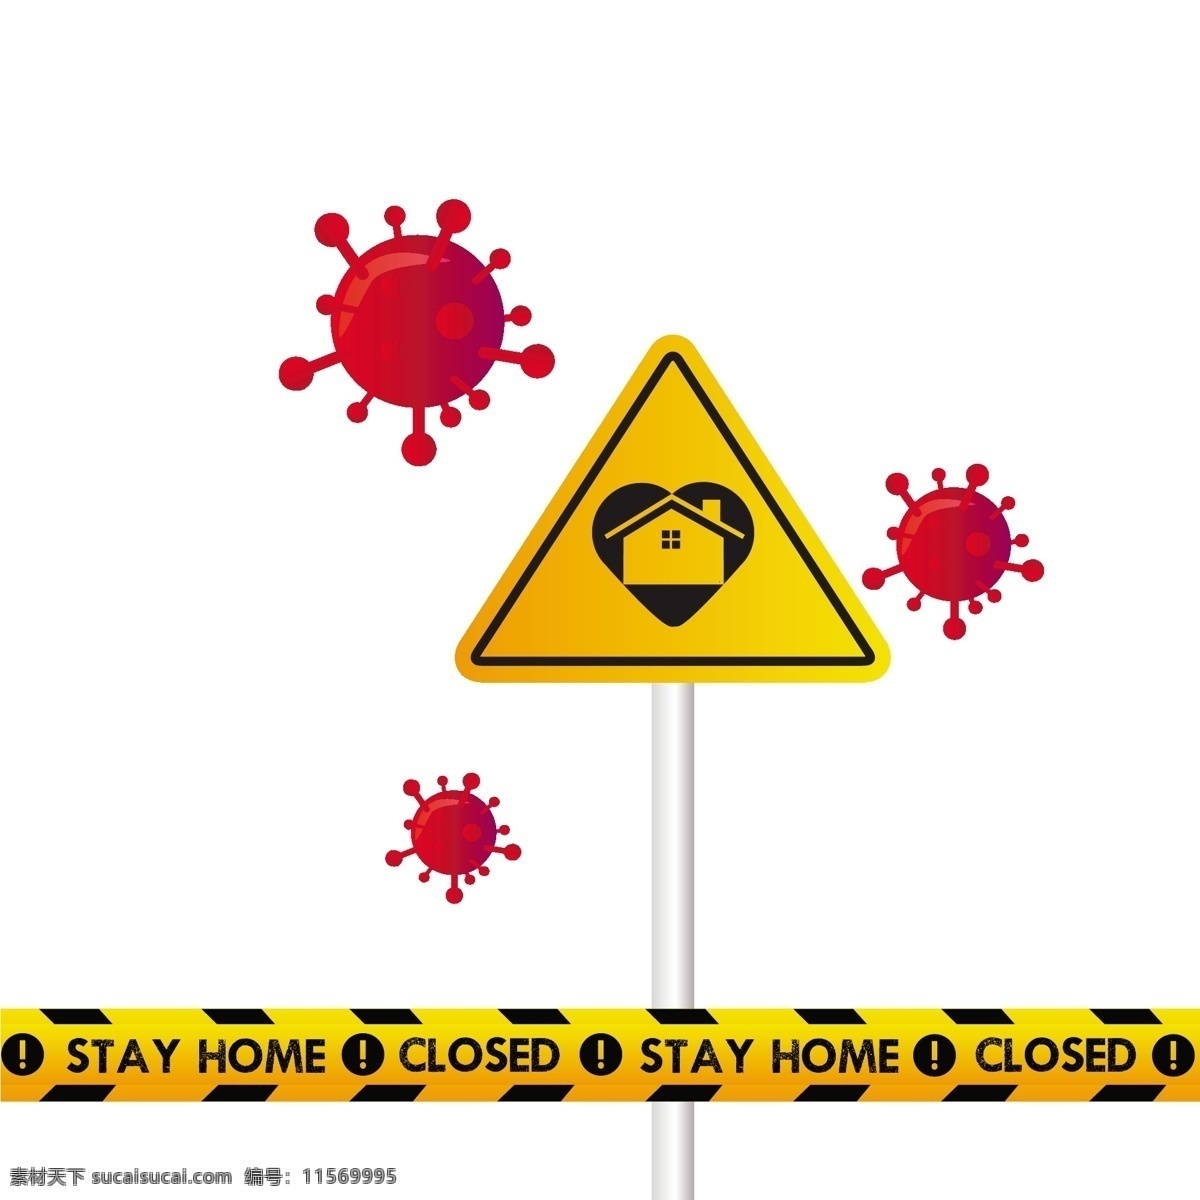 新冠病毒预防 防疫 疫情 宣传背景 病毒 消毒 传染 生物学 医学 健康 图标 标志 细胞 概念 危险 元素 流感 医疗卫生保健